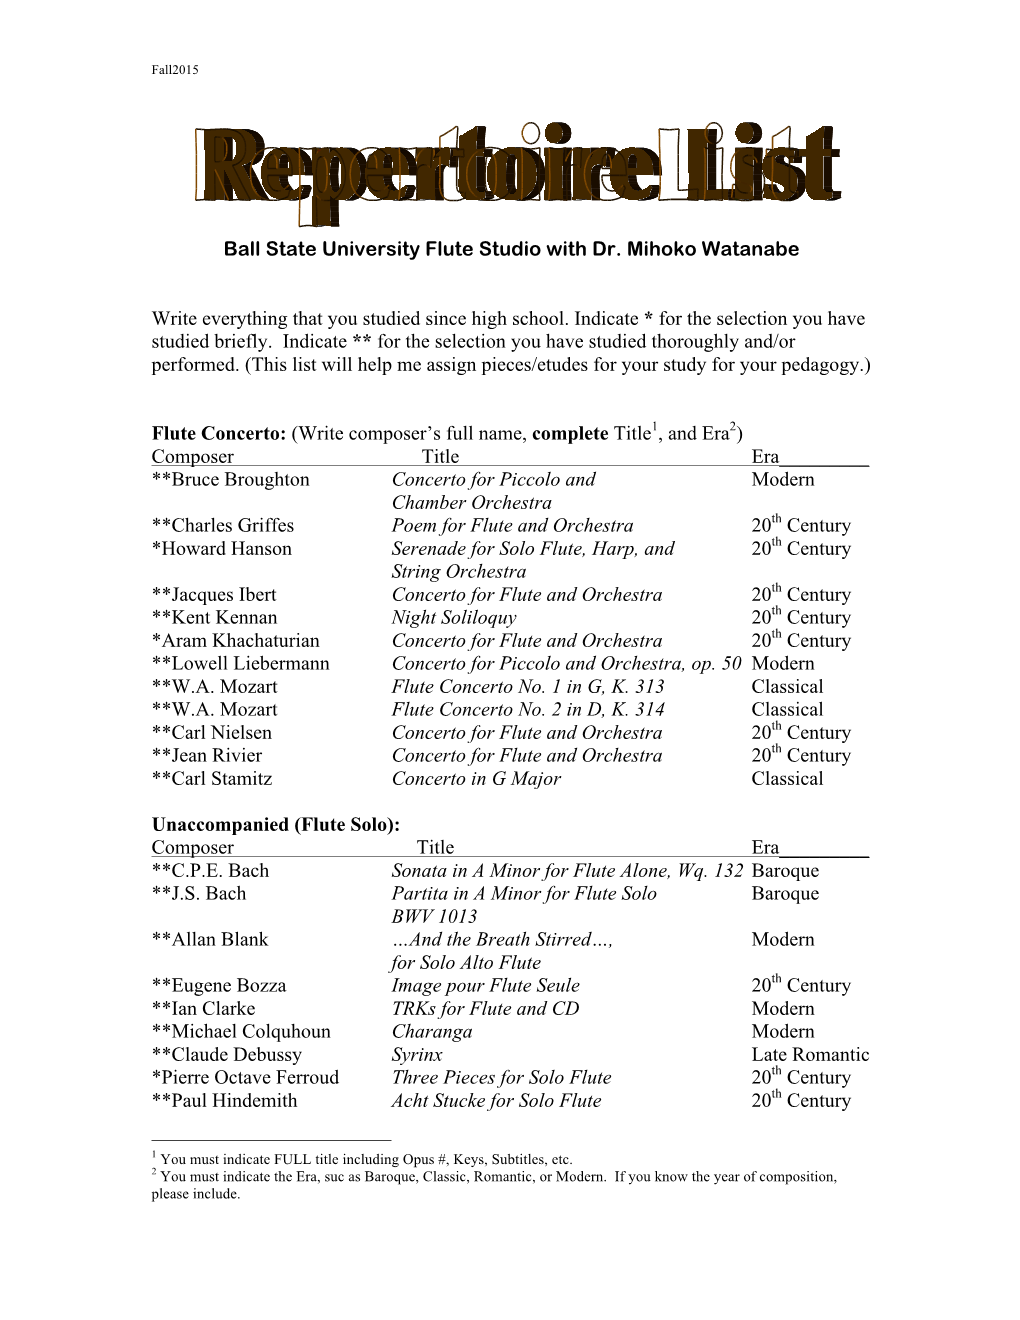 BSU Repertoire List